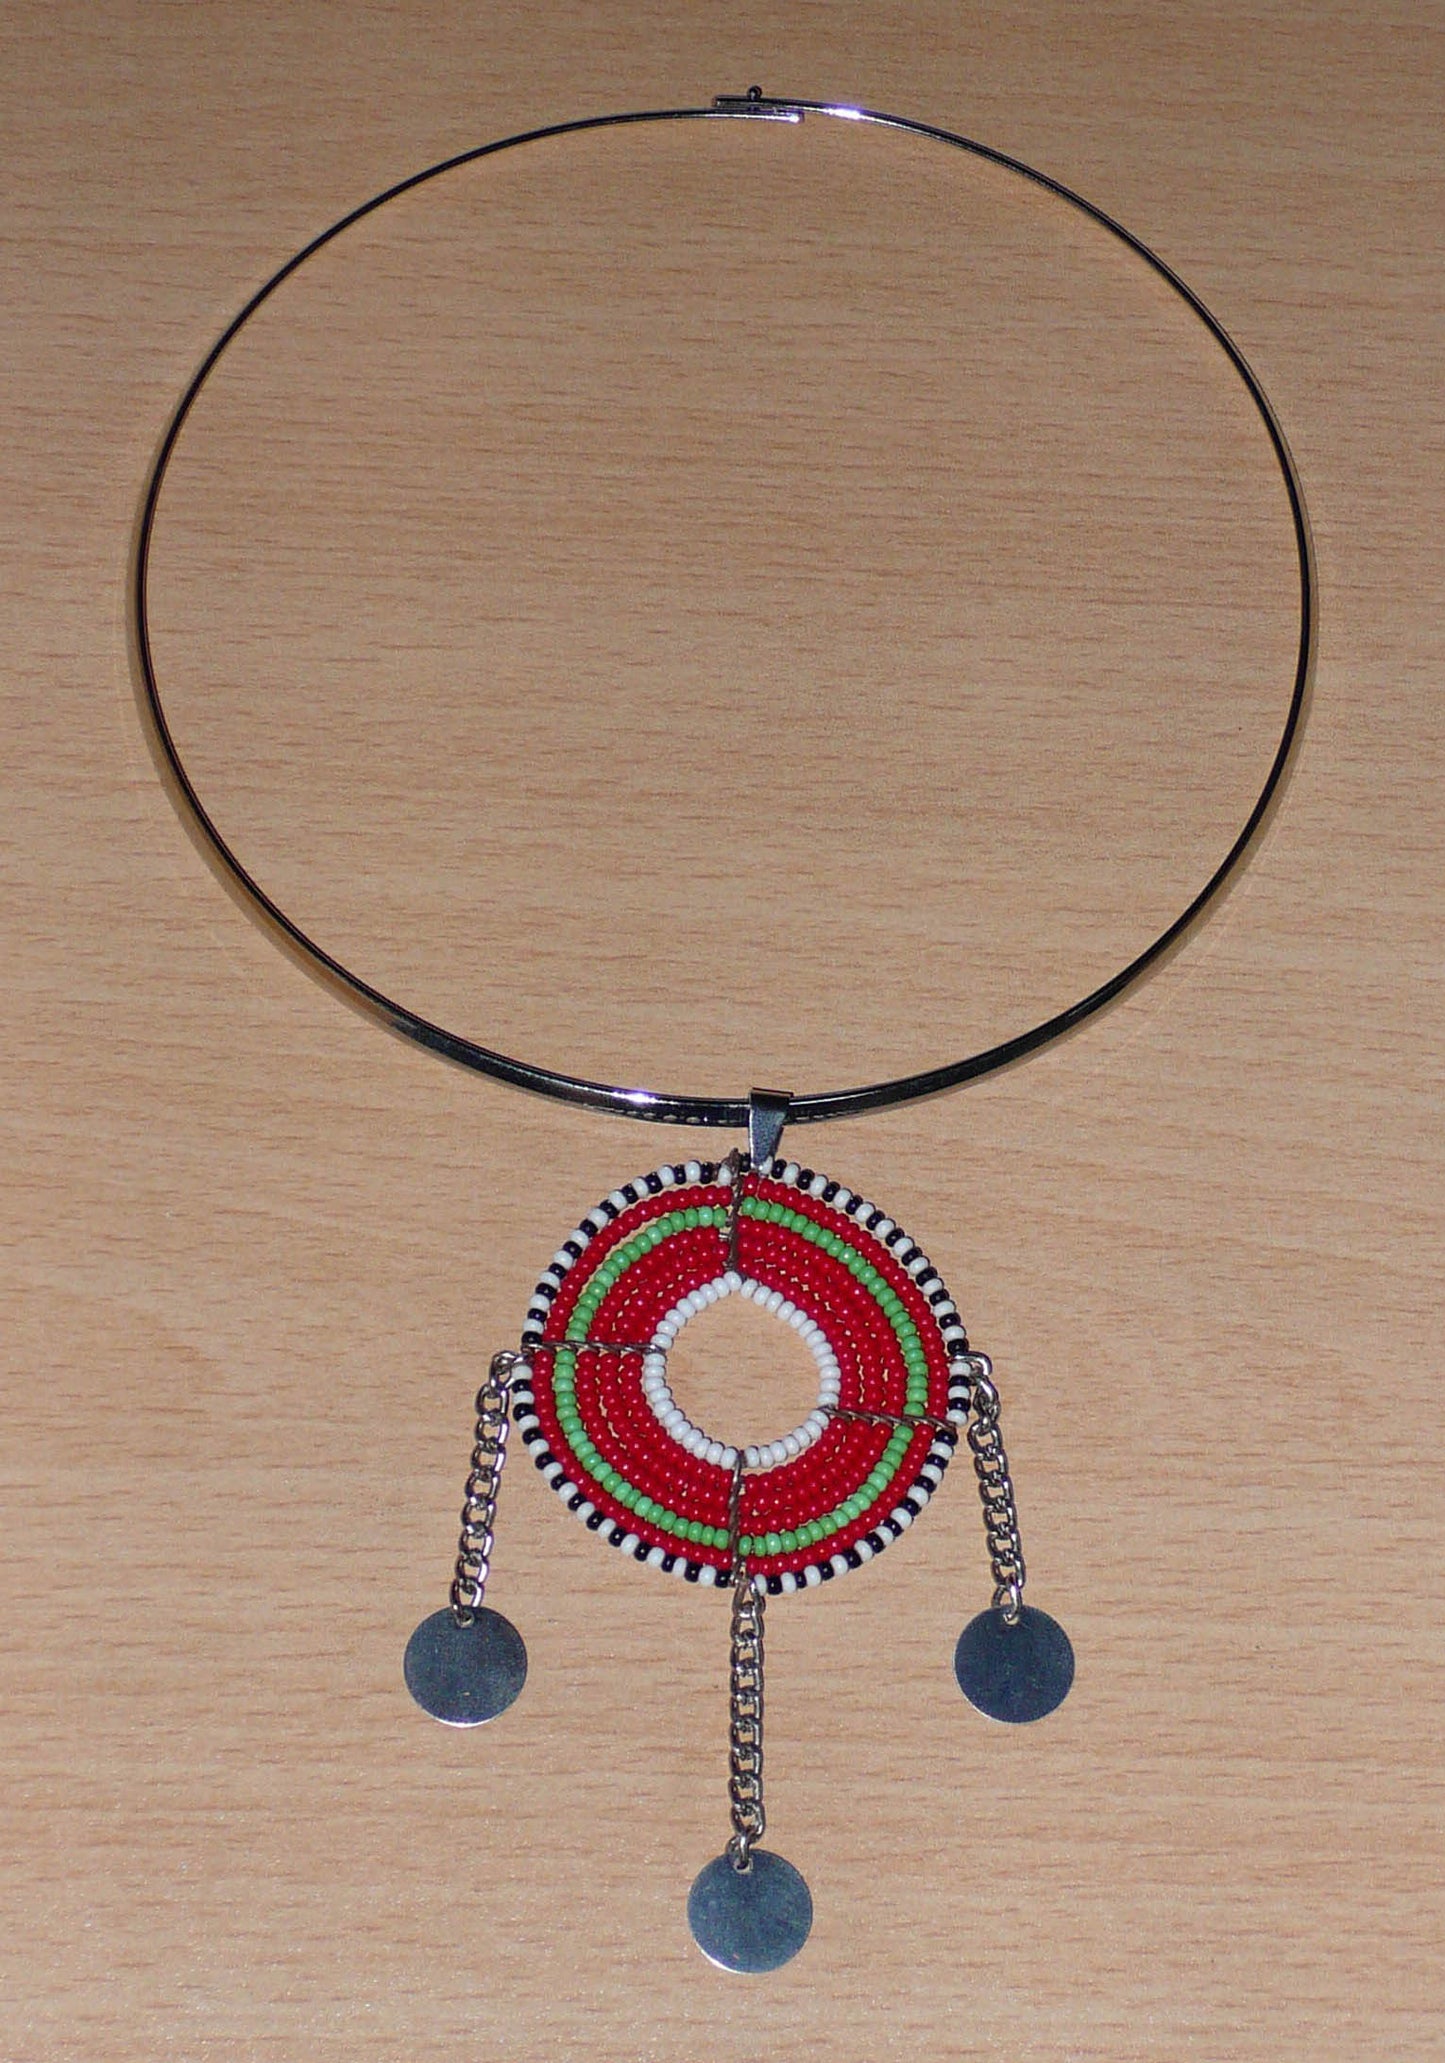 Bijou ethnique. Collier ras de cou en laiton agrémenté d'un beau pendentif Massai rond en perles de rocaille rouges et vertes, puis noires et blanches sur son contour ; il est décoré de trois petits disques en métal fixés à des chaînettes réparties de part et d'autre et à la base du pendentif. Ce collier mesure 22,5 cm de long, la circonférence du tour de cou est de 42,5 cm et le diamètre de 13,5 cm ; le pendentif tribal mesure 9 cm de long et 5 cm de large. Timeless Fineries